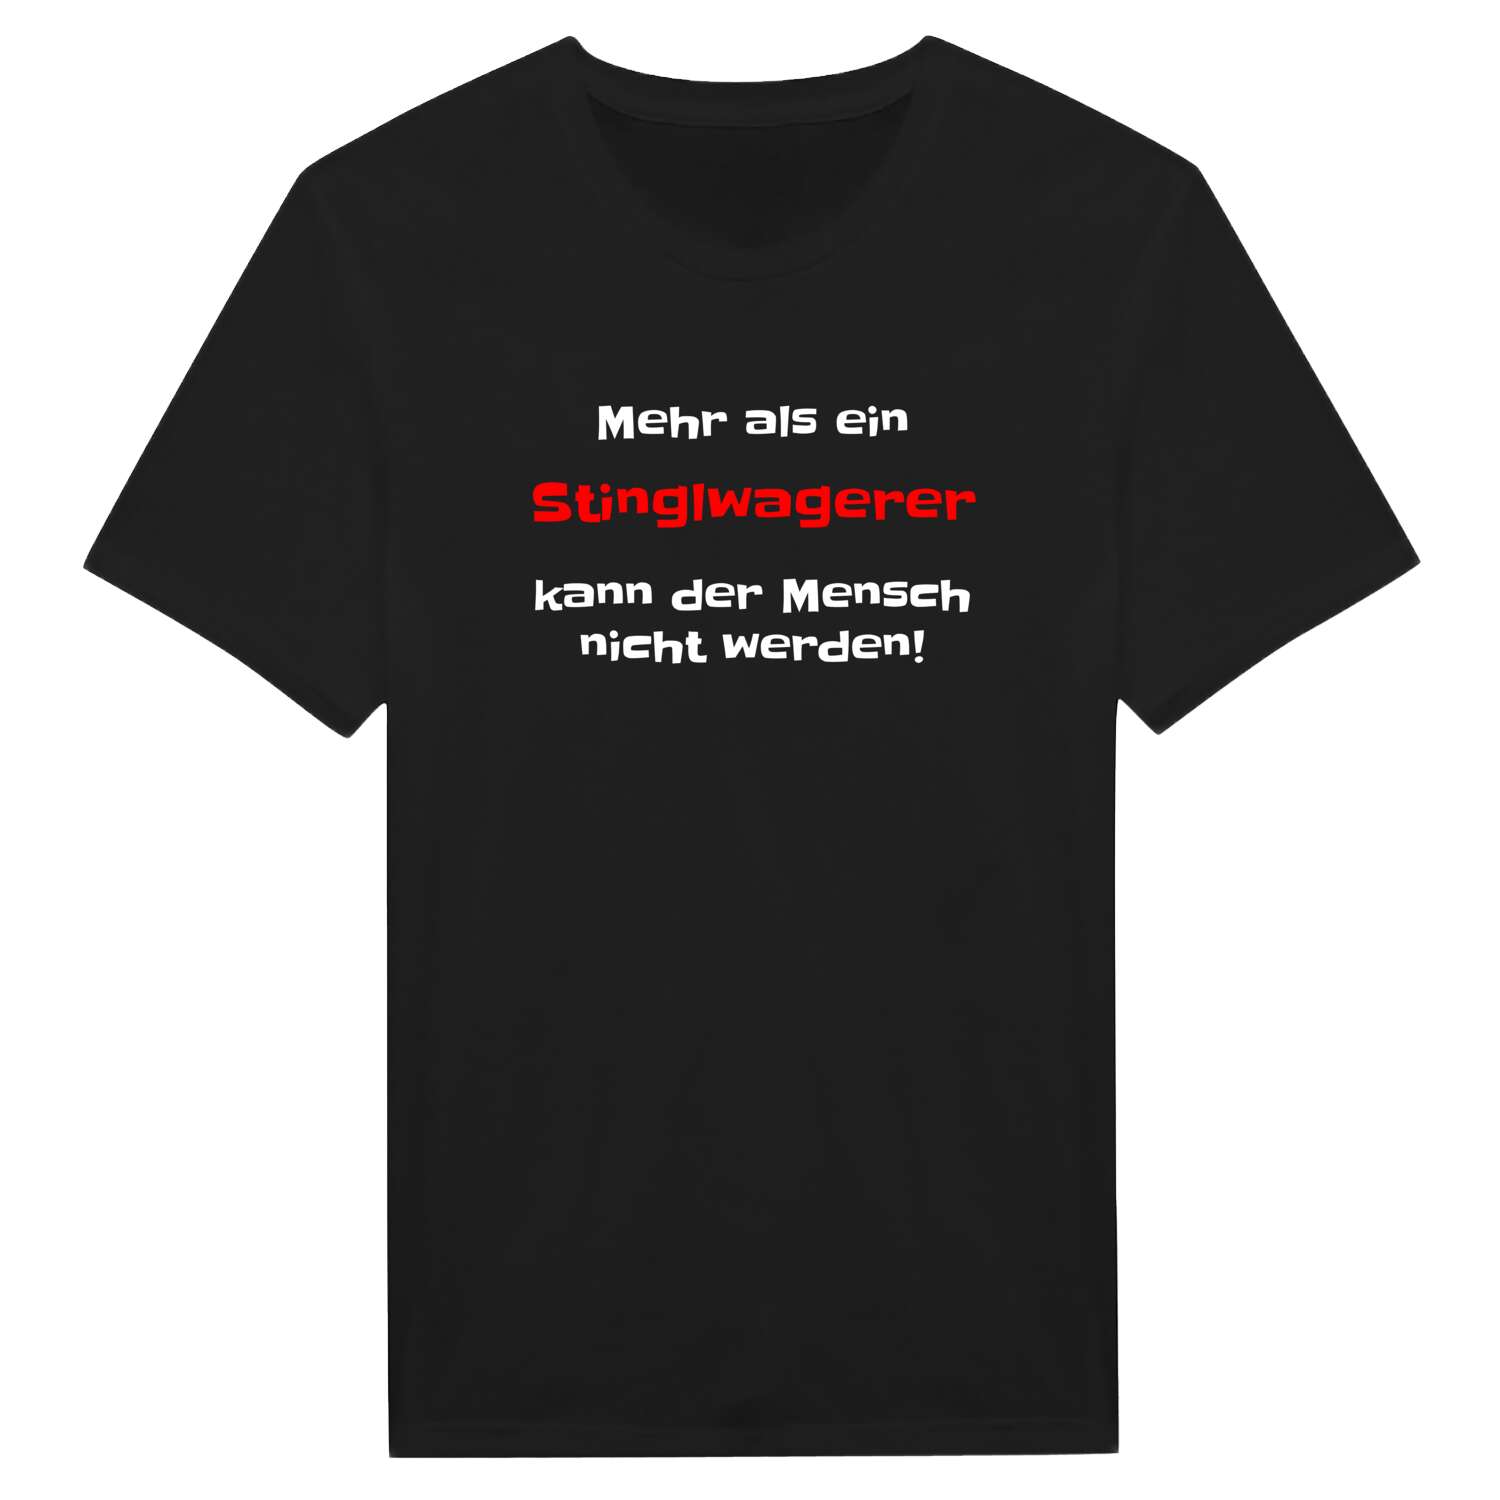 Stinglwager T-Shirt »Mehr als ein«